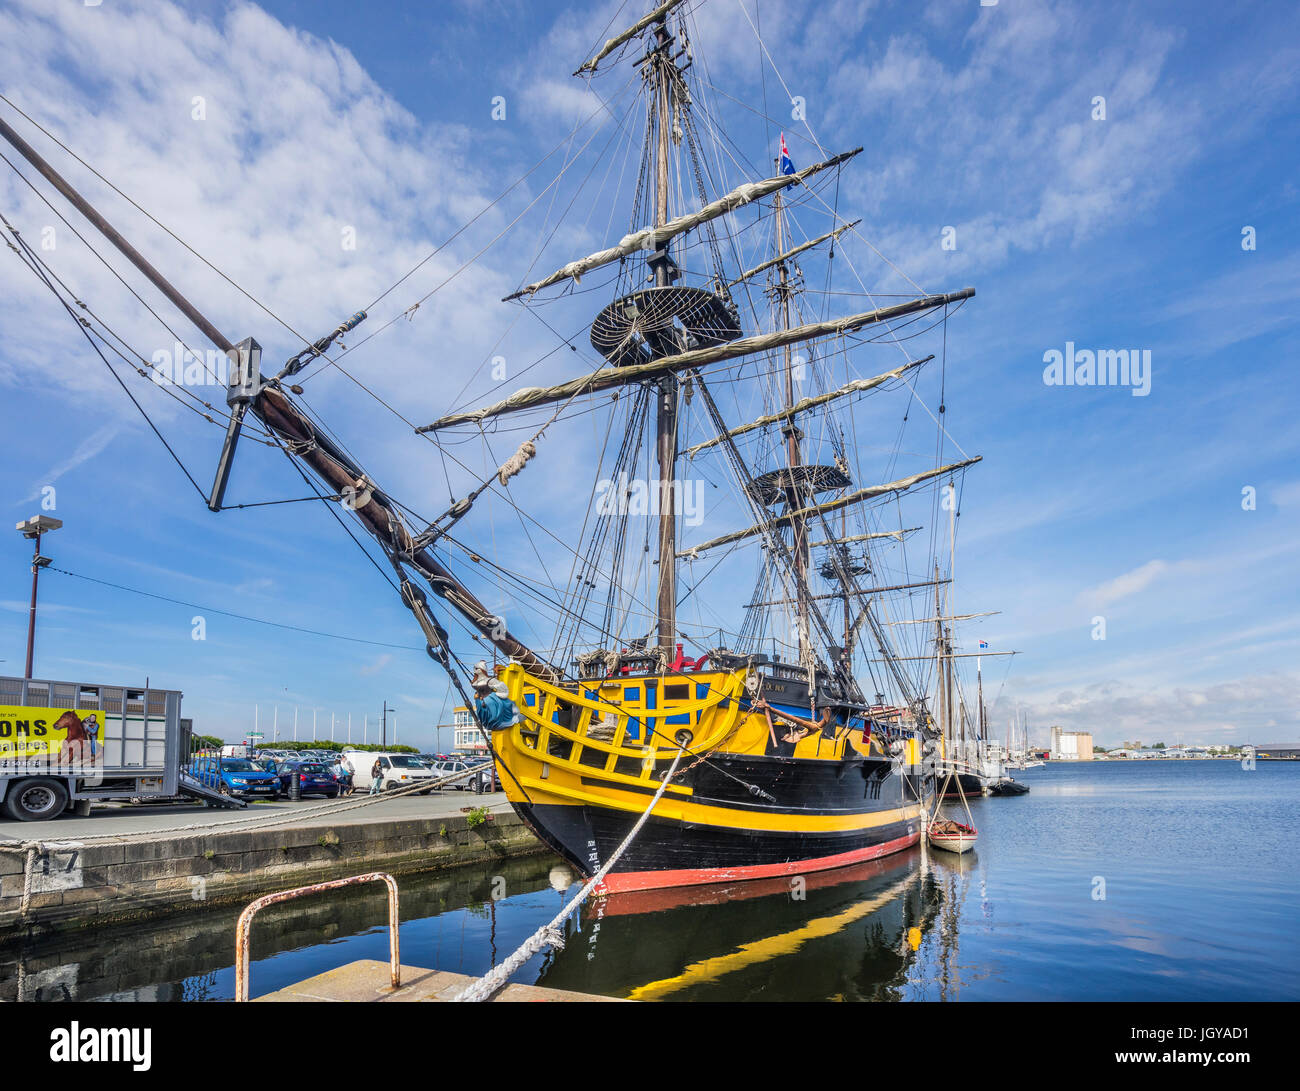 France, Bretagne, Saint-Malo, Port, le trois-mâts Etoille frégate du Roy représente un navire de l'âge de Nelson Banque D'Images